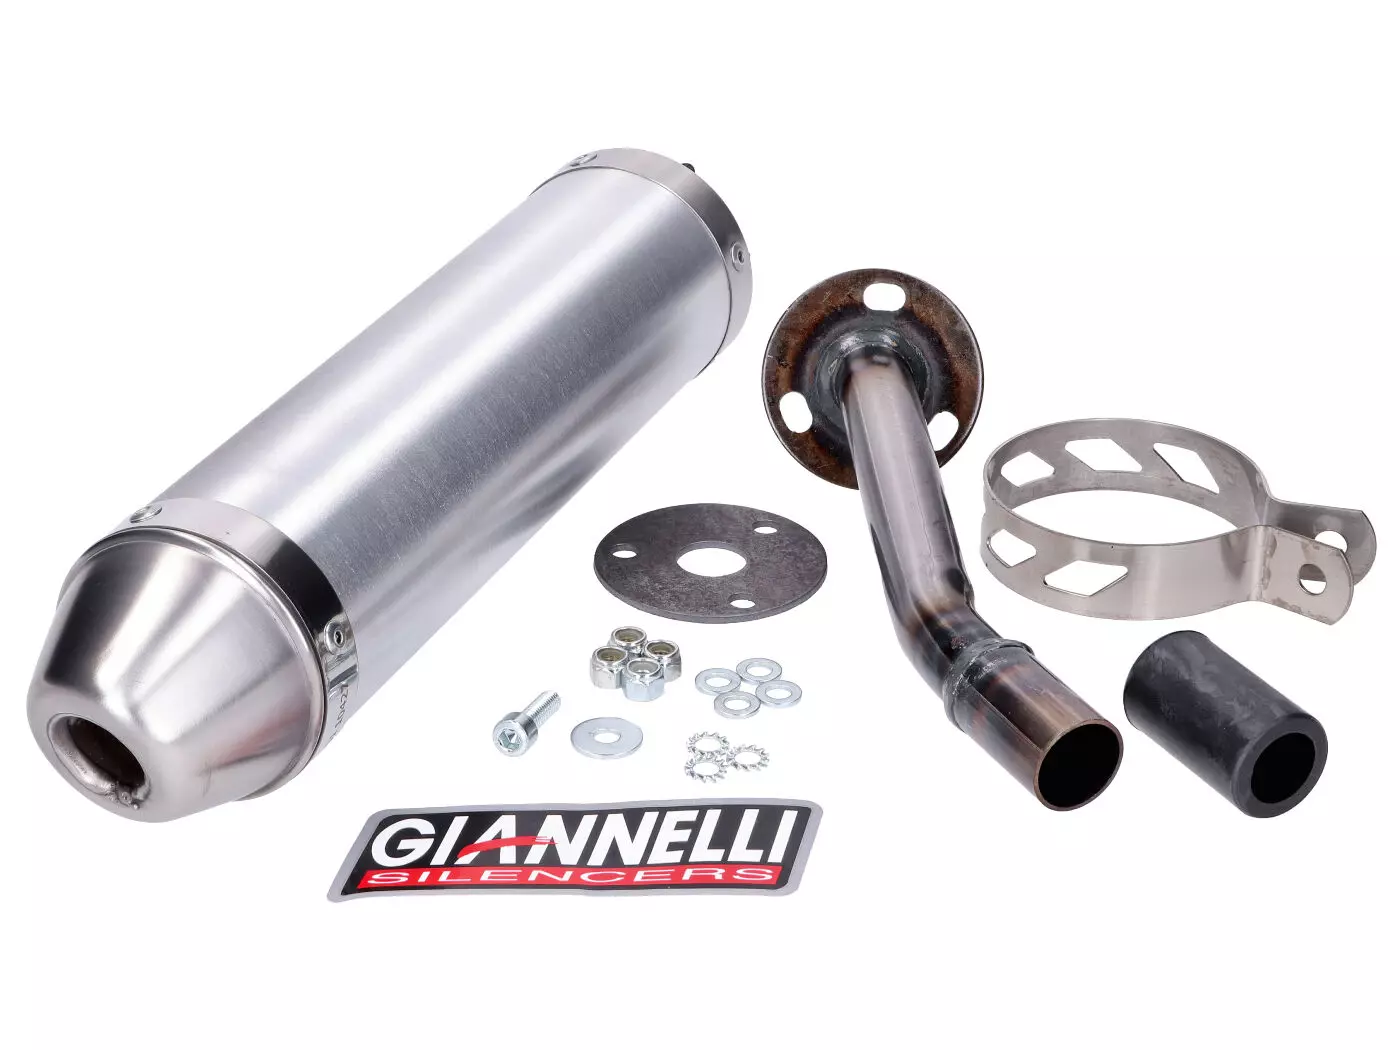 Einddemper Giannelli Aluminium voor Vent Derapage 50, 50RR 19-20